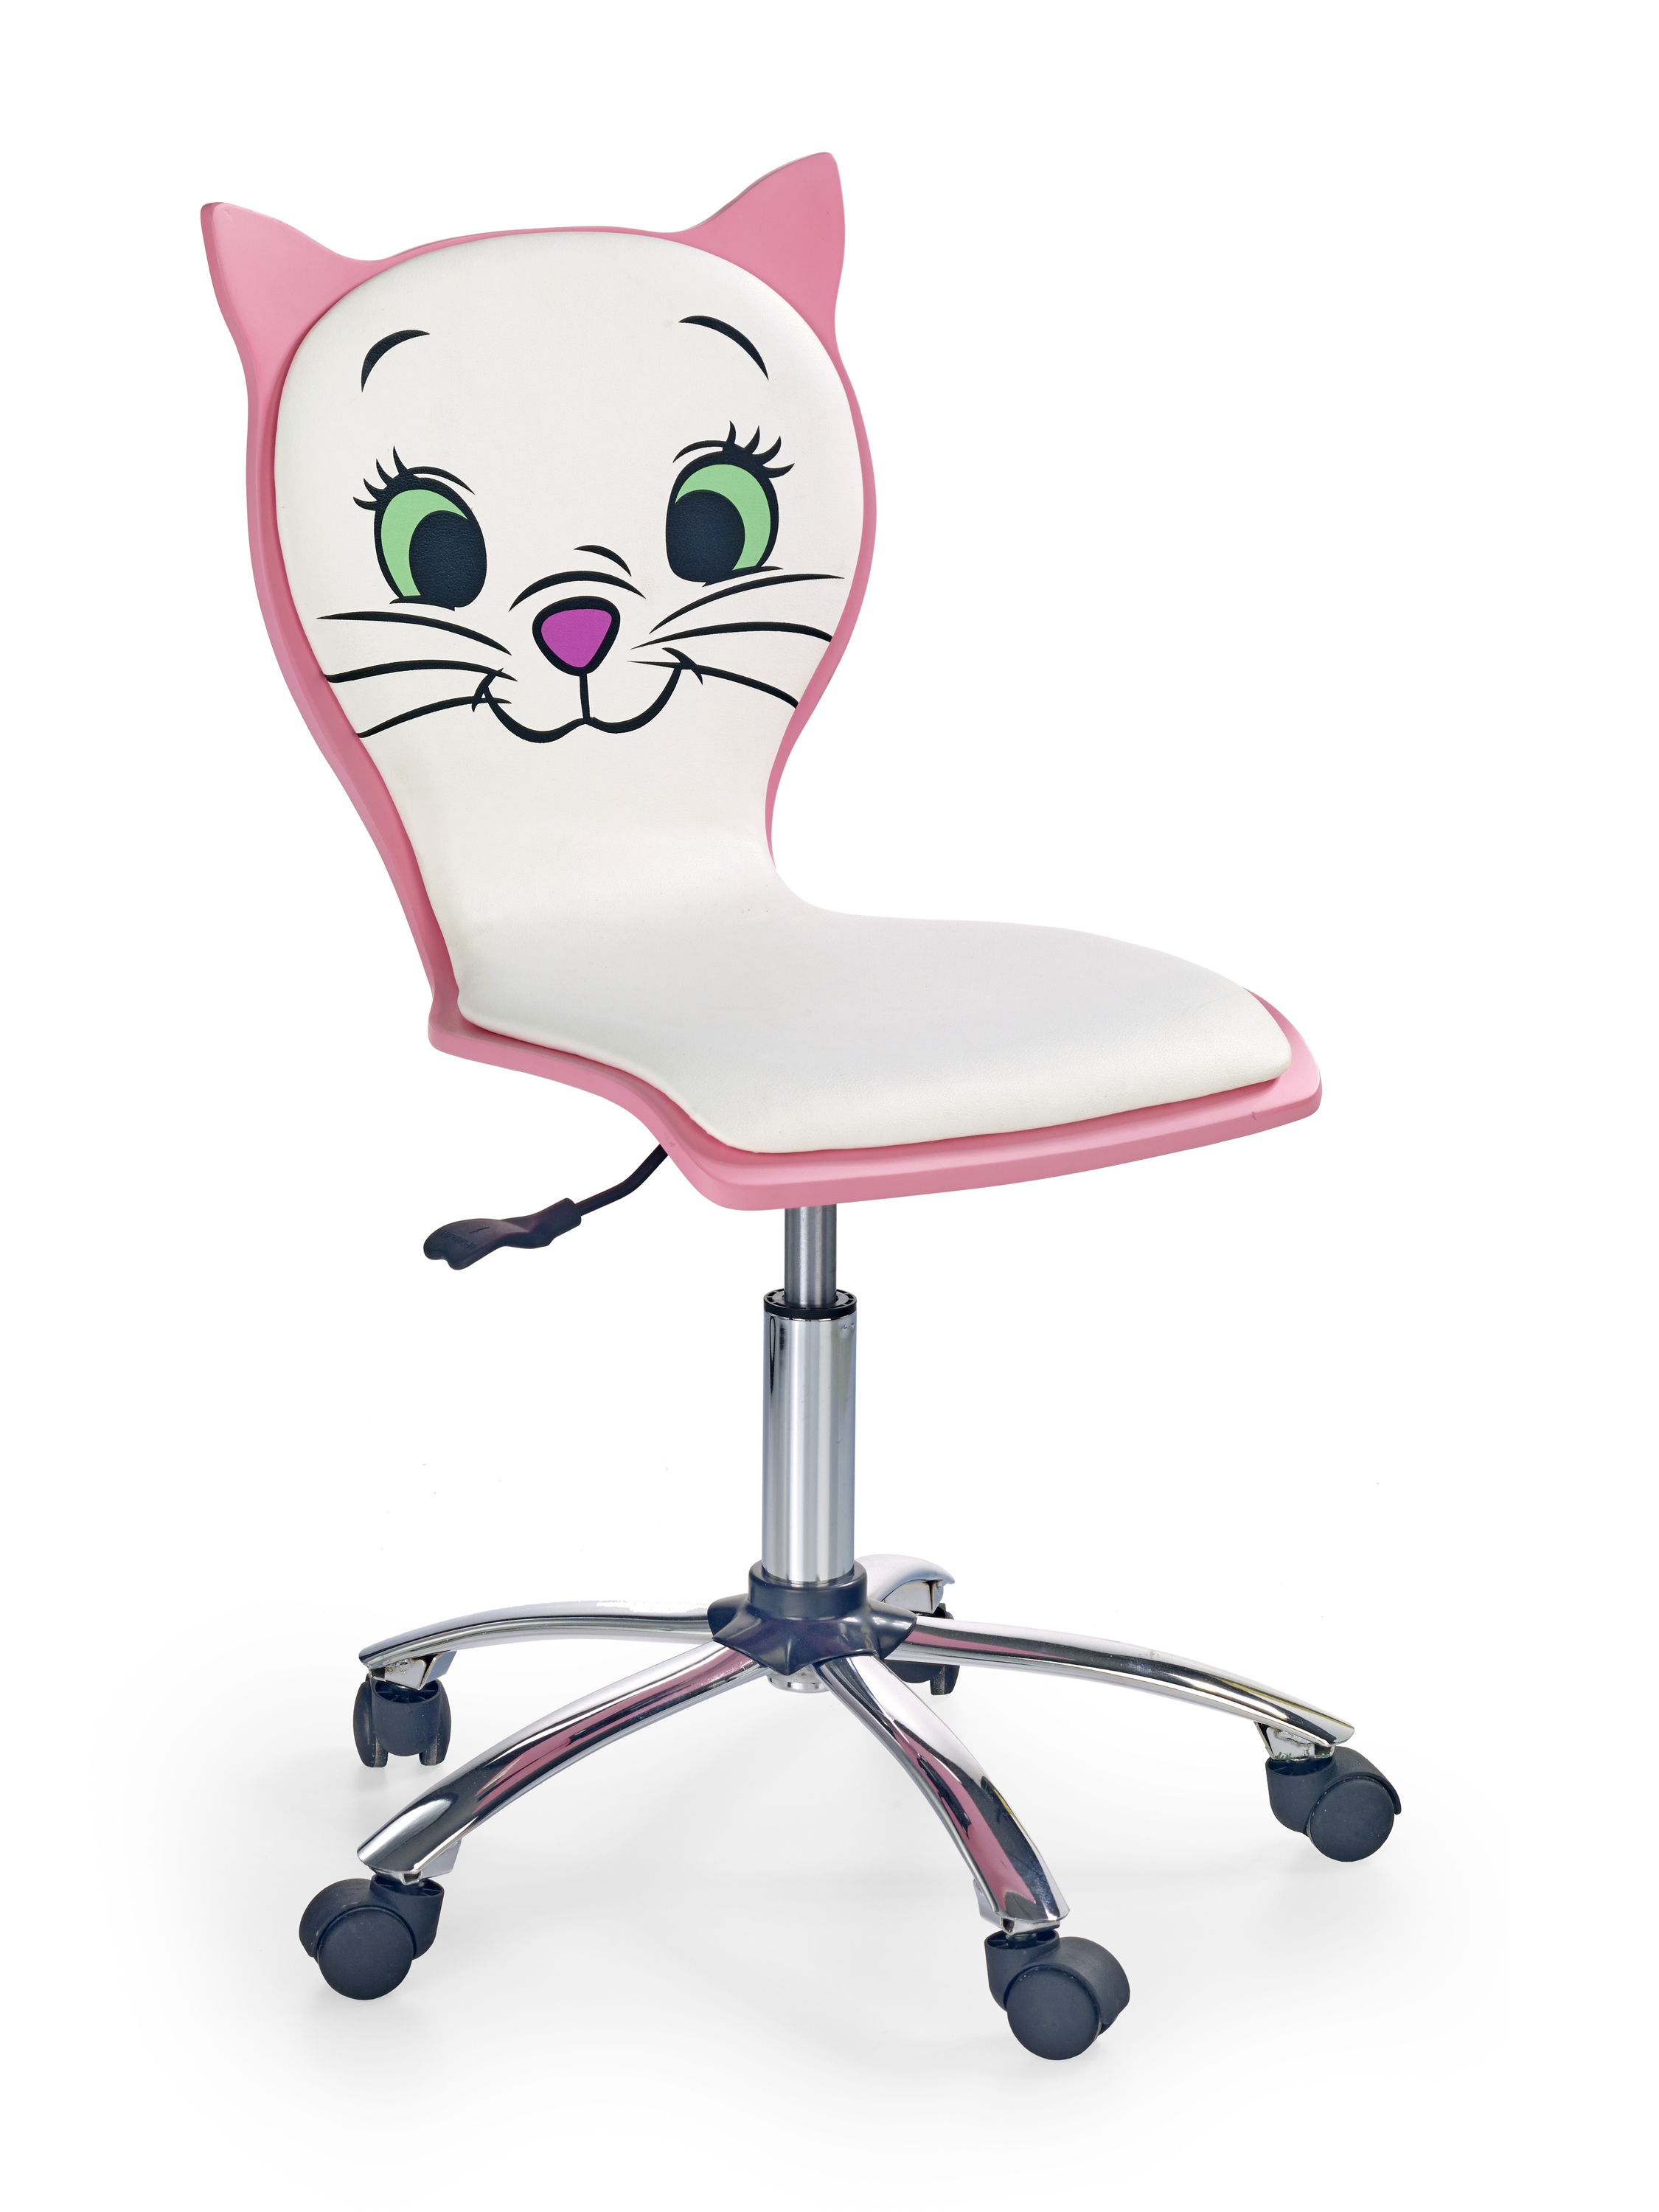 Kitty 2 irodai szék - fehér/rózsaszín Kancelářske křeslo kitty 2 - Bílý / Růžová